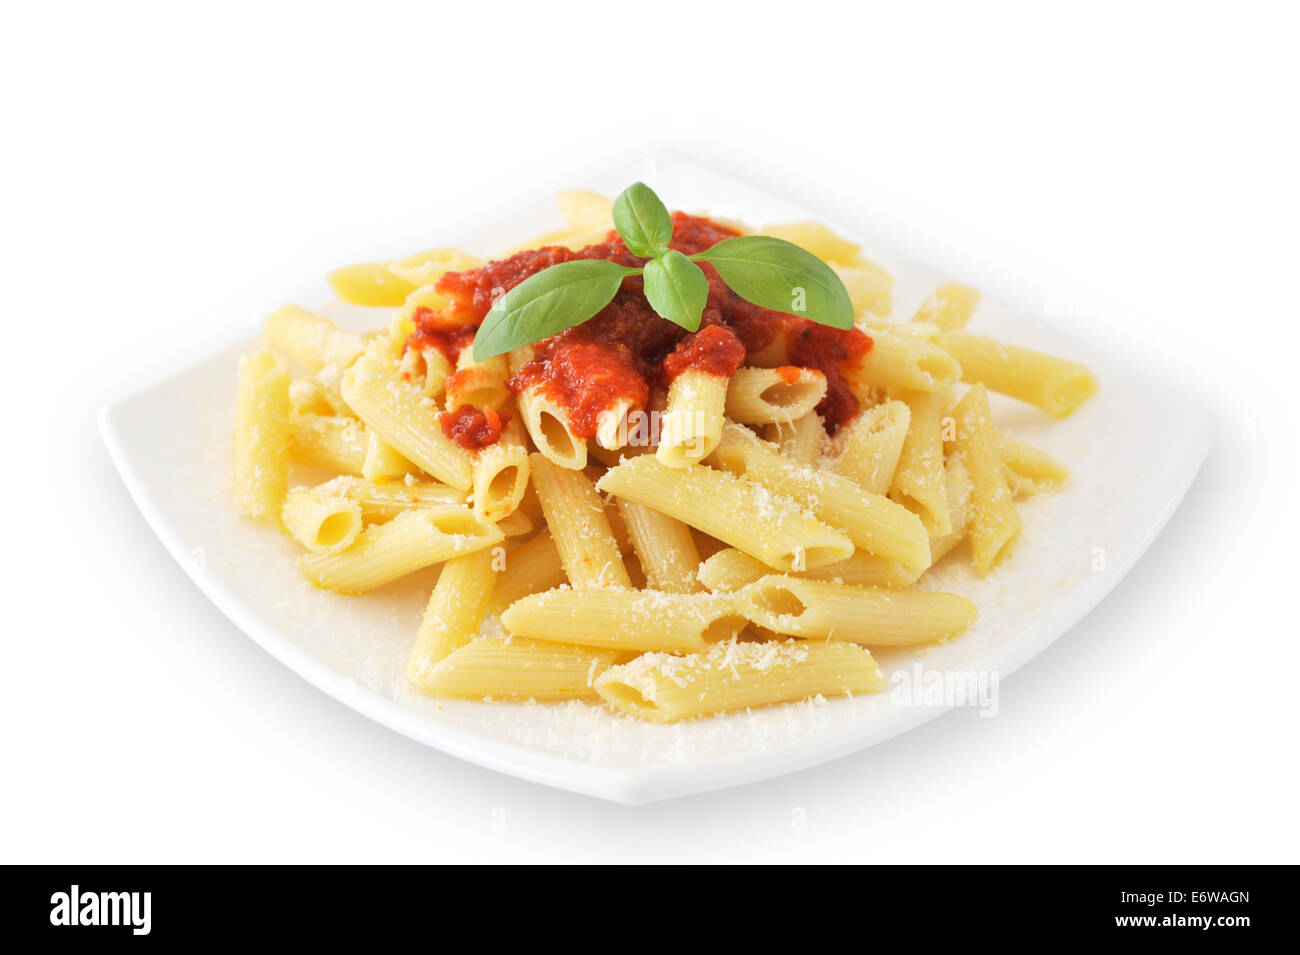 Eine typische italienische Teigwaren Pasta mit Tomaten-Ketchup, Parmesan  und Basilikum in weiße Schale. Vegetarisches Essen. Gehobene italienische  Küche Stockfotografie - Alamy